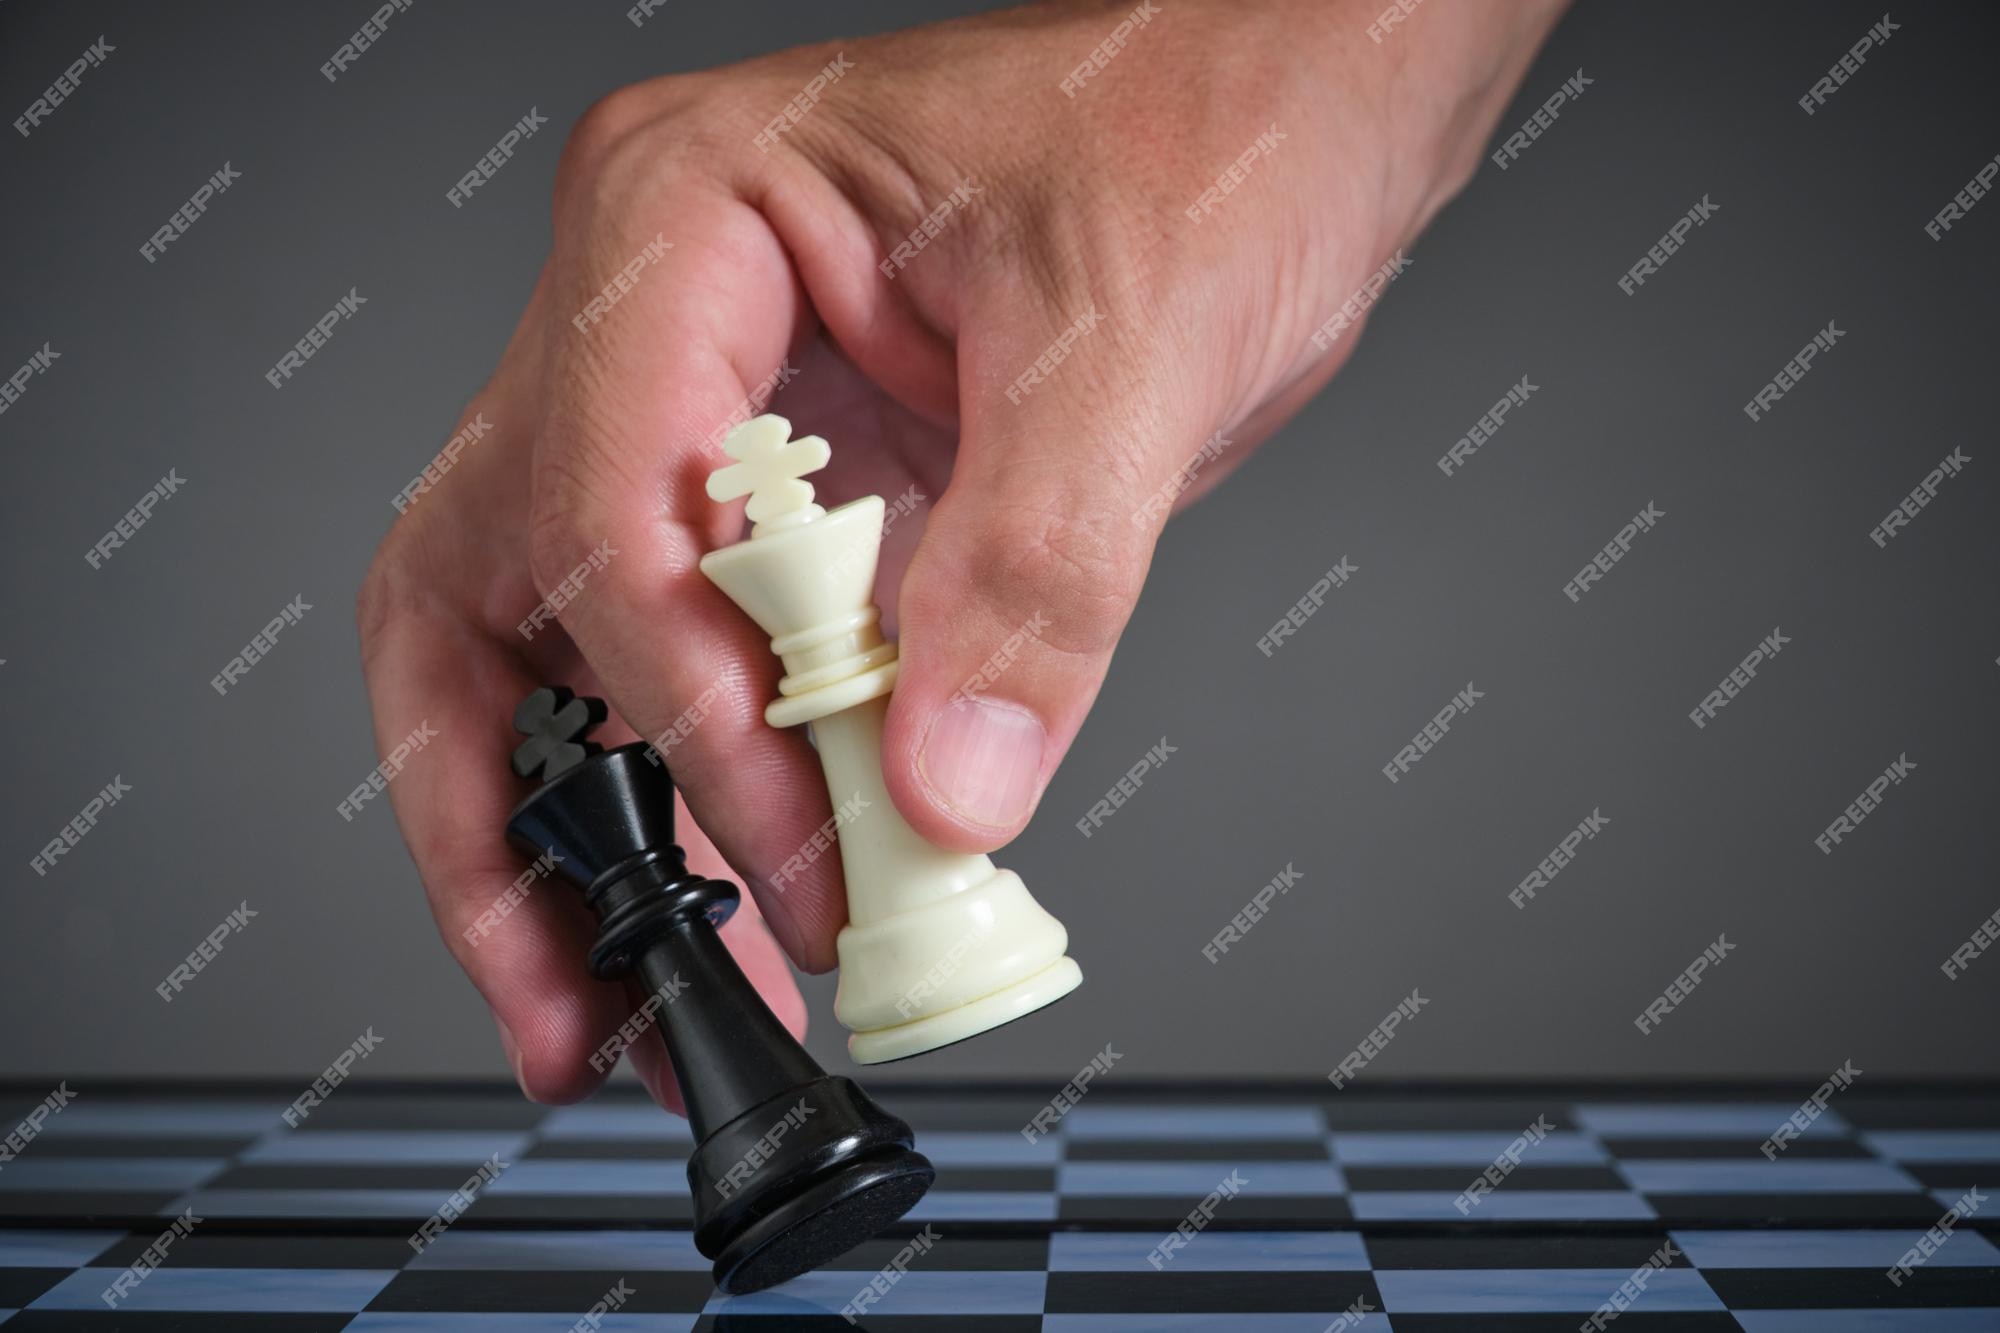 Xadrez de jogo é vitória peça de xadrez branca rei sobre rei preto